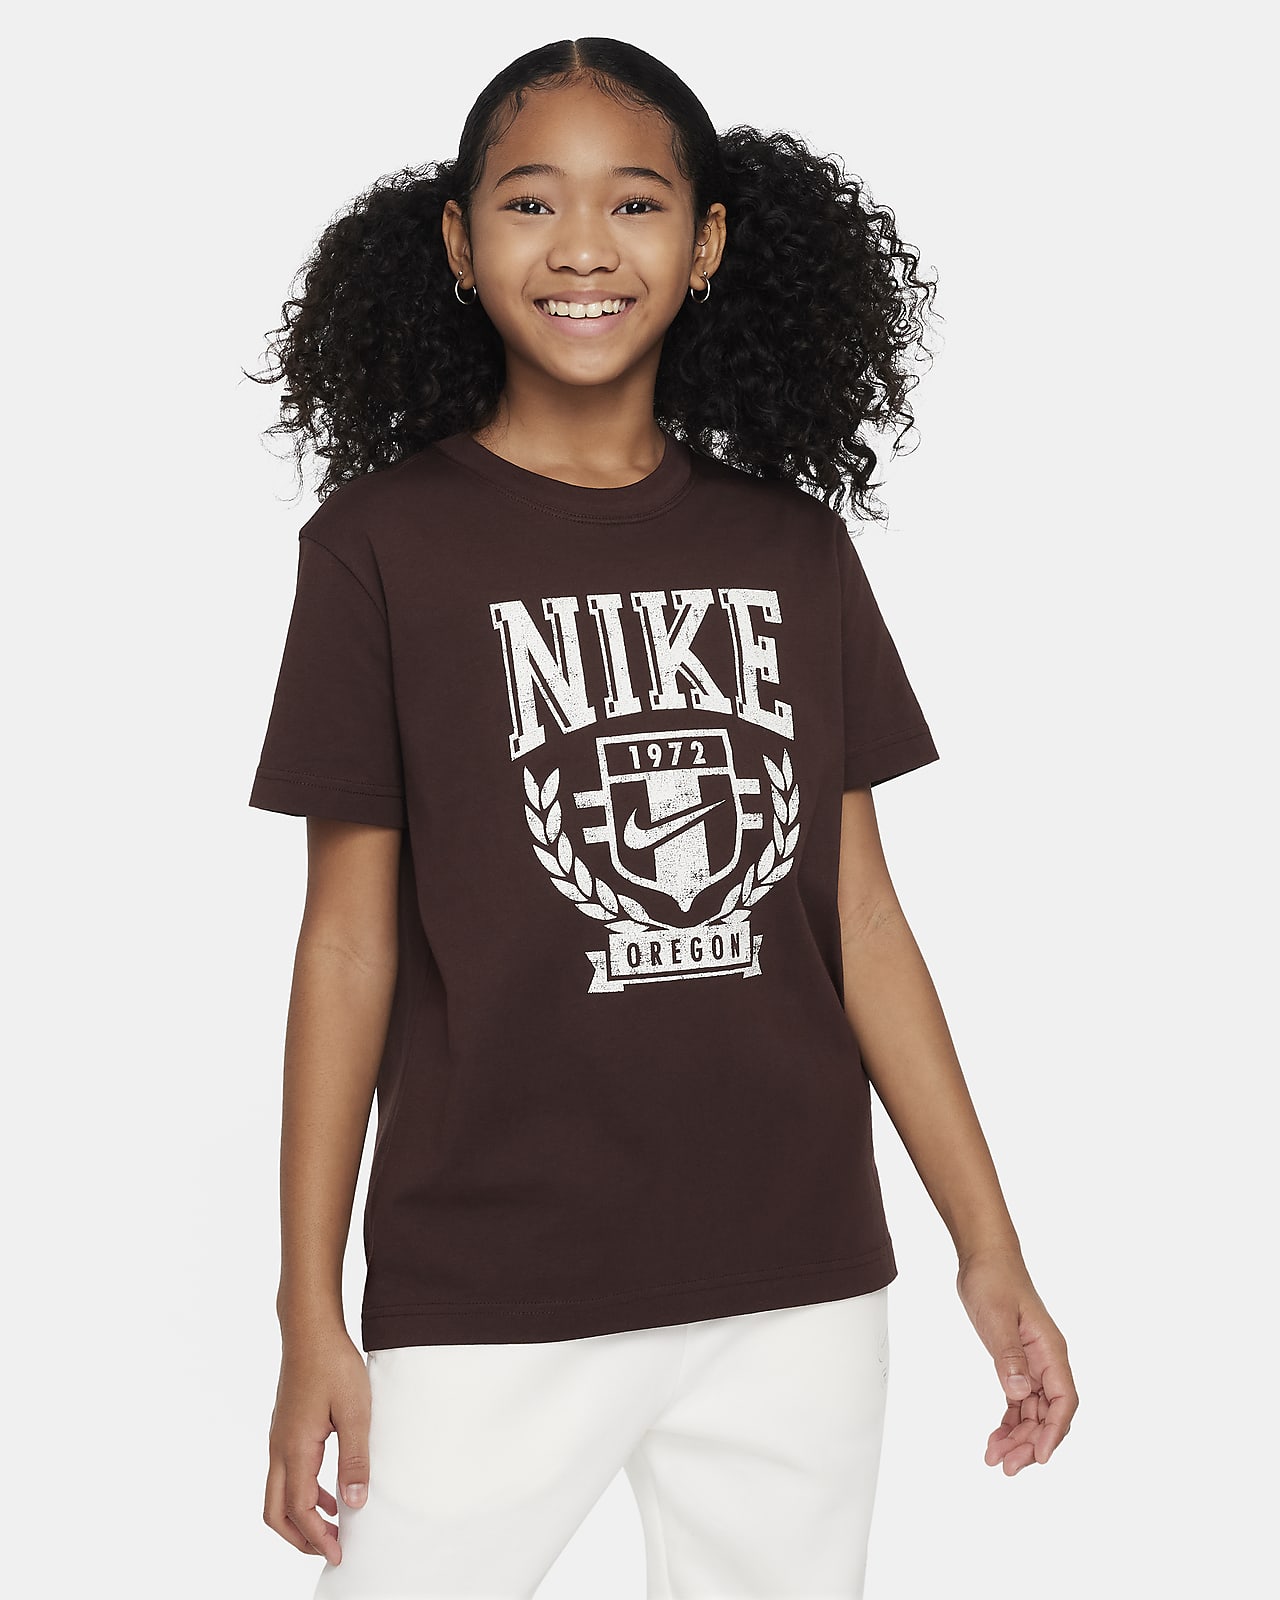 T-shirt Nike Sportswear Júnior (Rapariga)